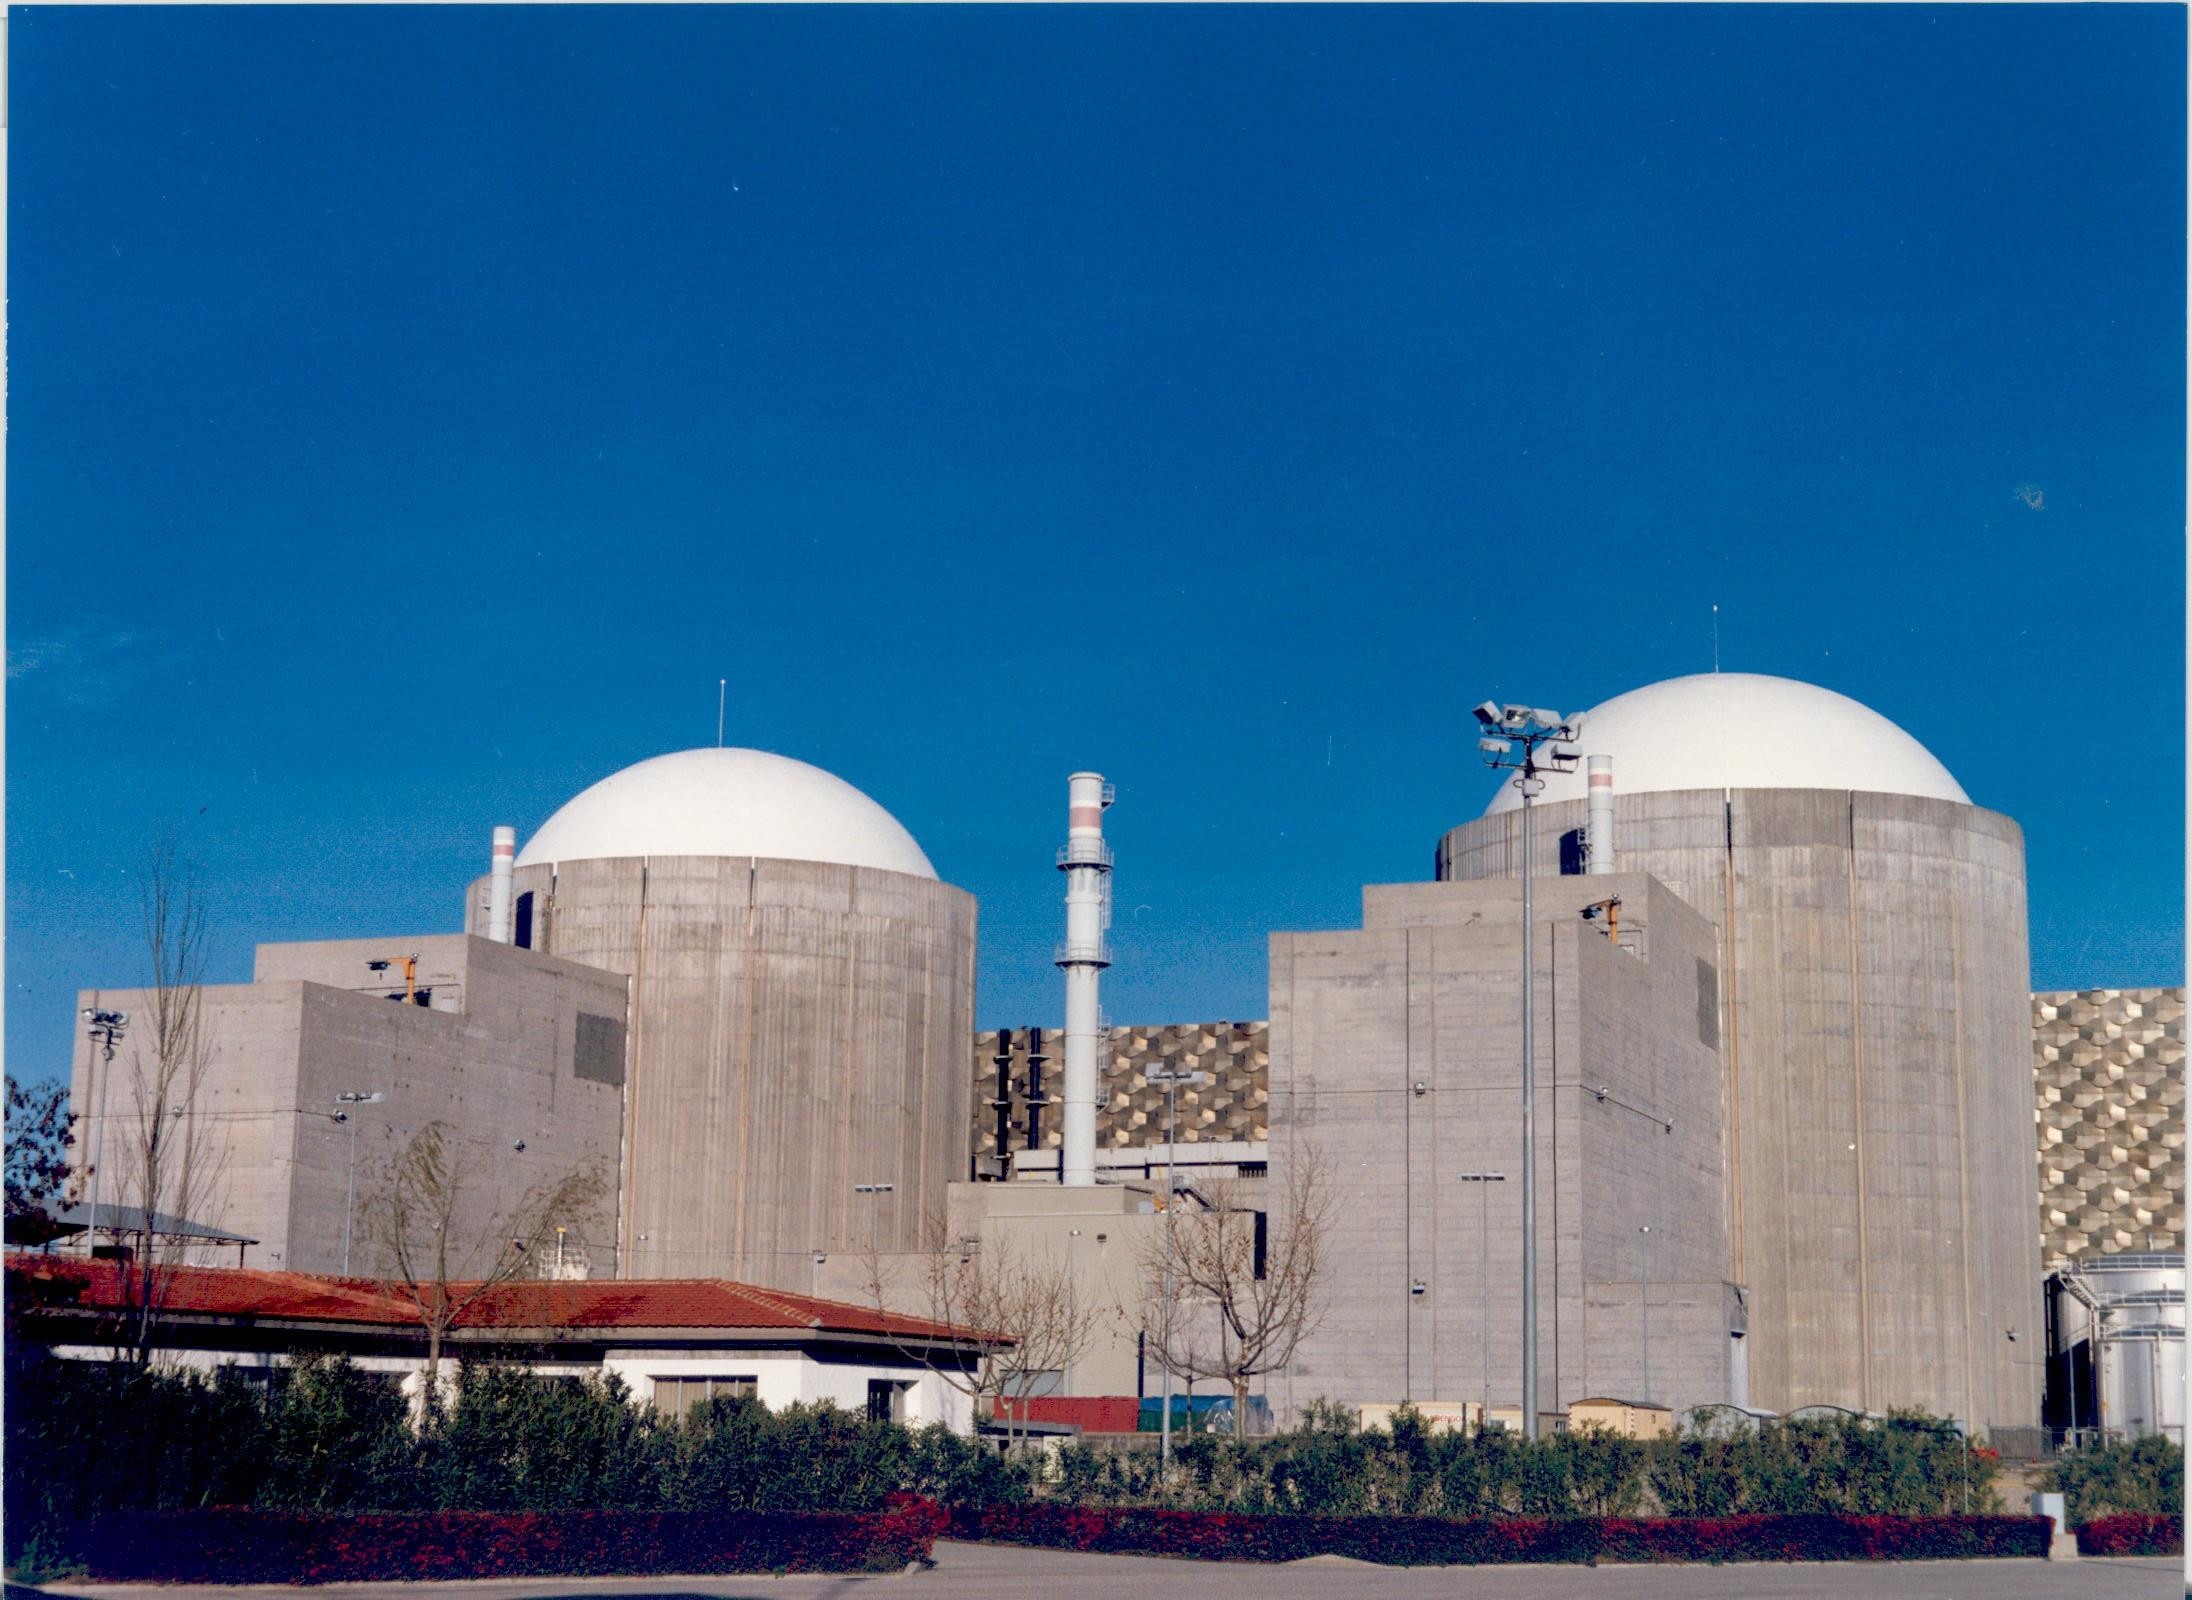 Tres centrales nucleares pararán próximamente para recargar combustible / EP